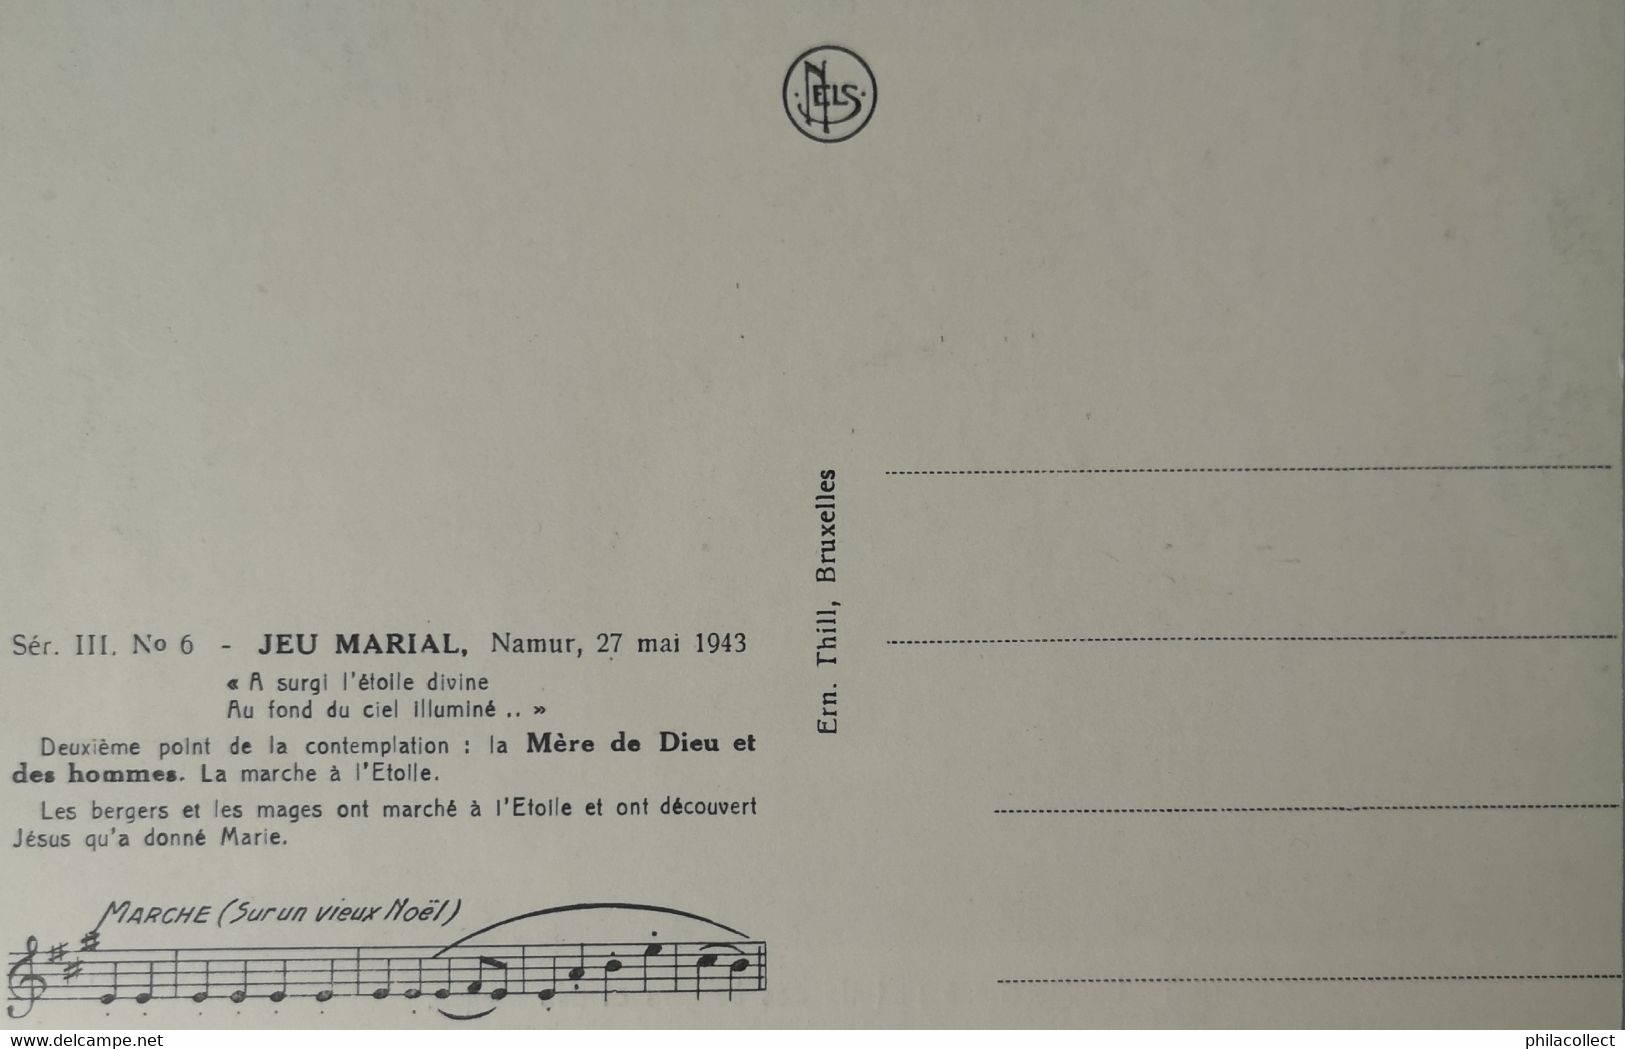 Namur // Jeu Marial Namur 27 Mai 1943 // Ser. III No. 6 // 19?? - Namur